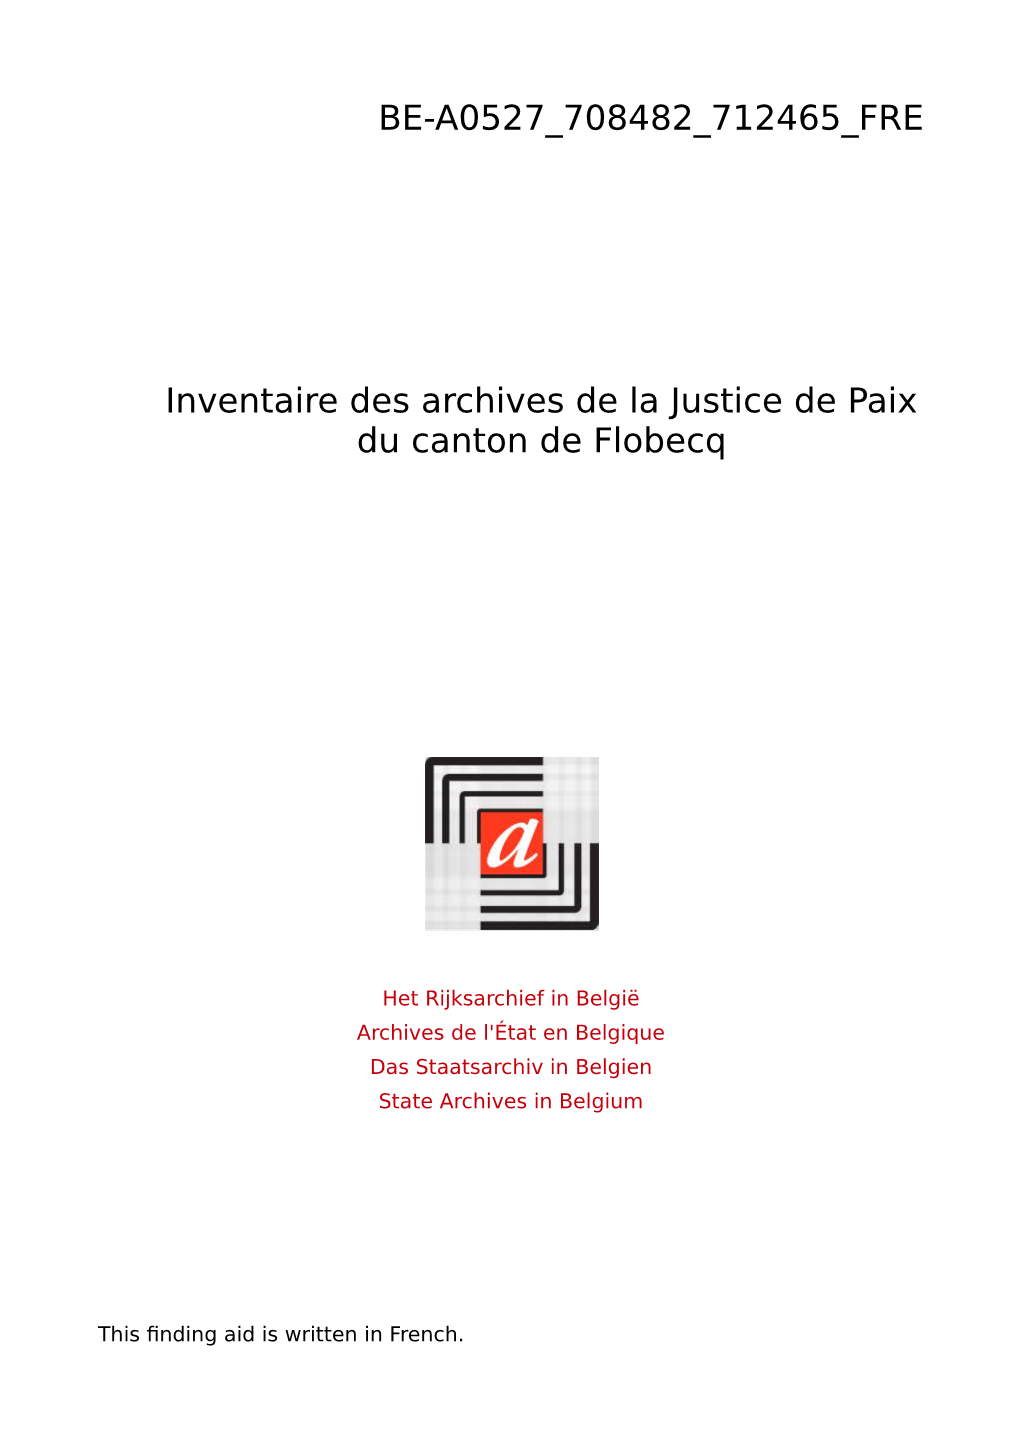 Justice De Paix Du Canton De Flobecq